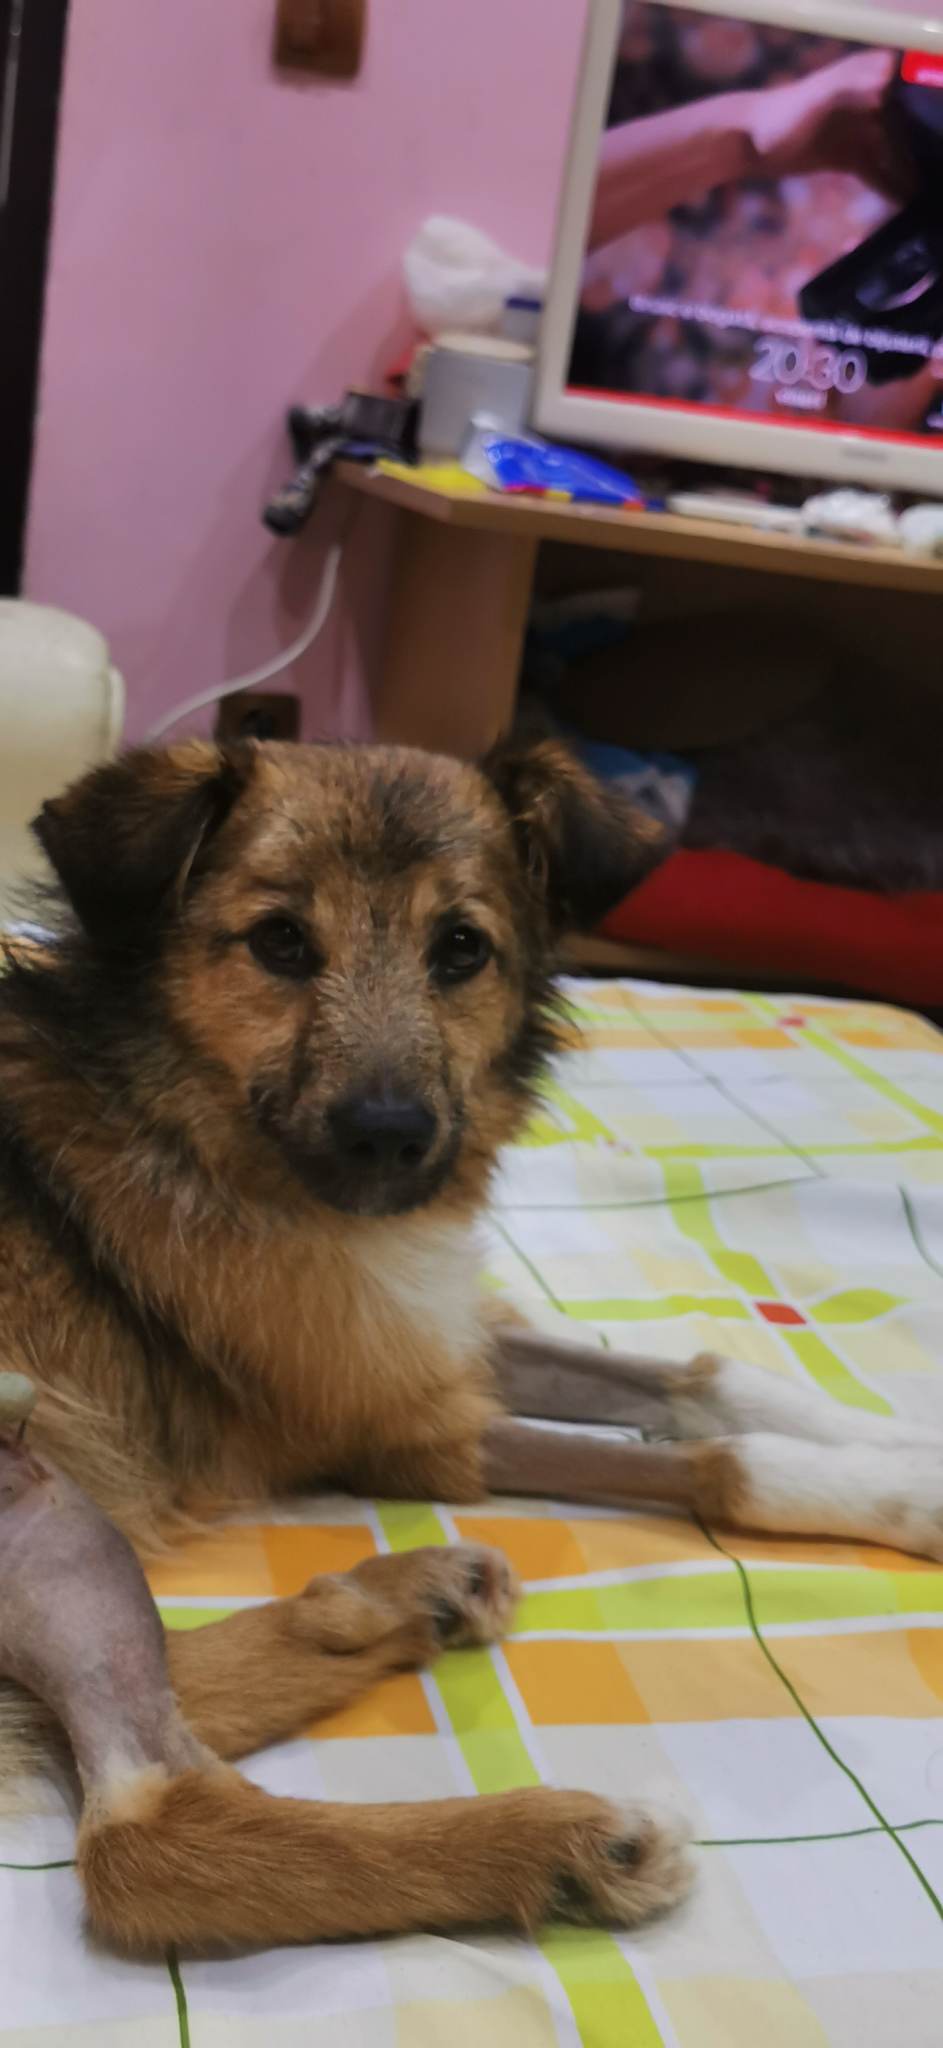 Bailey wartet in Rumänien